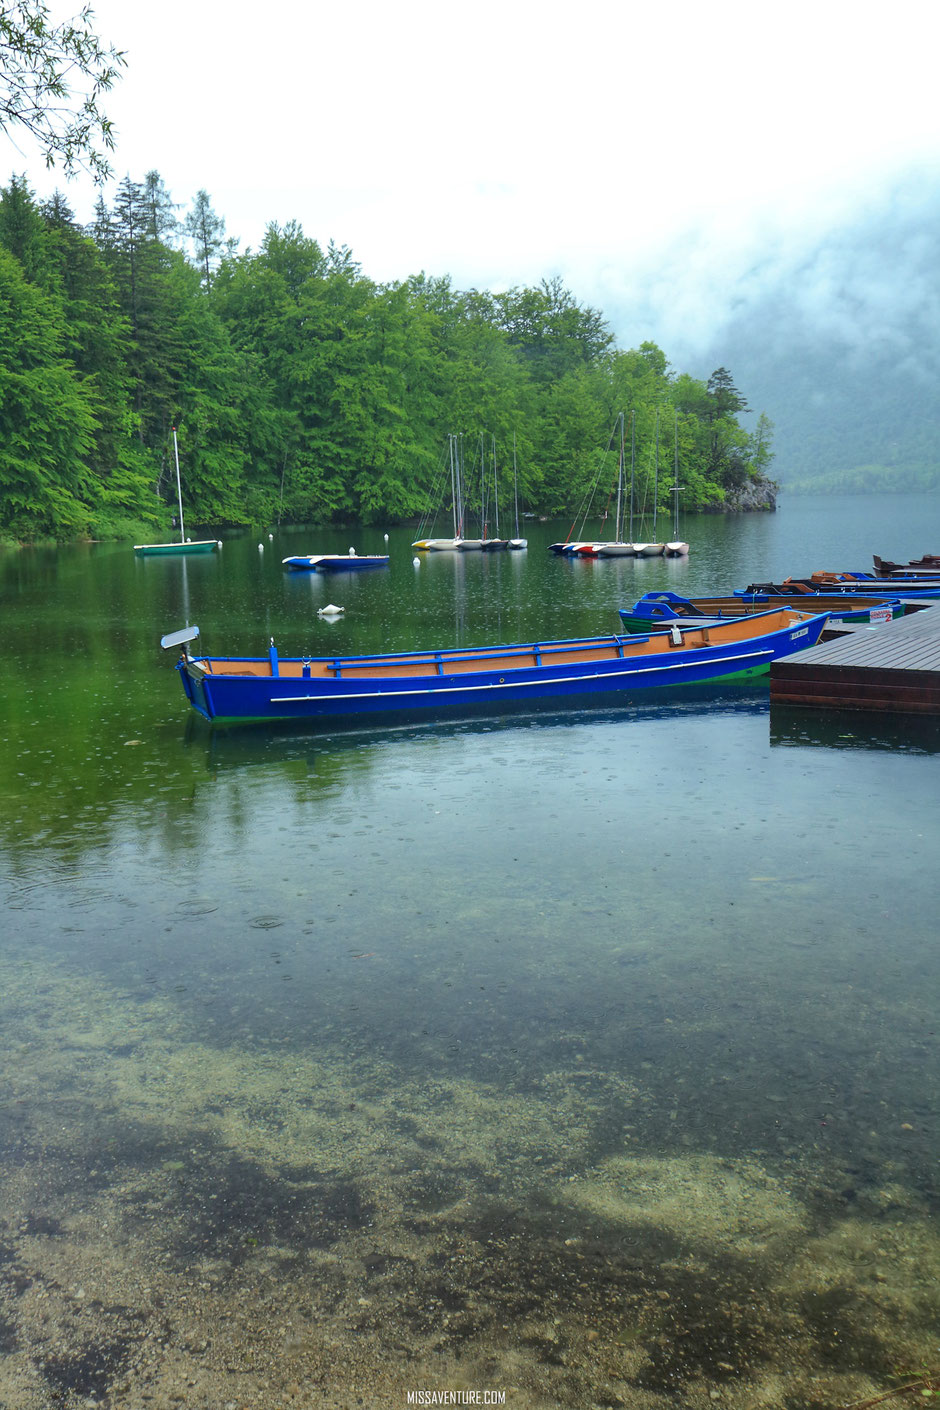 Le lac de Bohinj. Road trip en Slovenie. www.missaventure.com blog voyage d'aventure, nature et photos